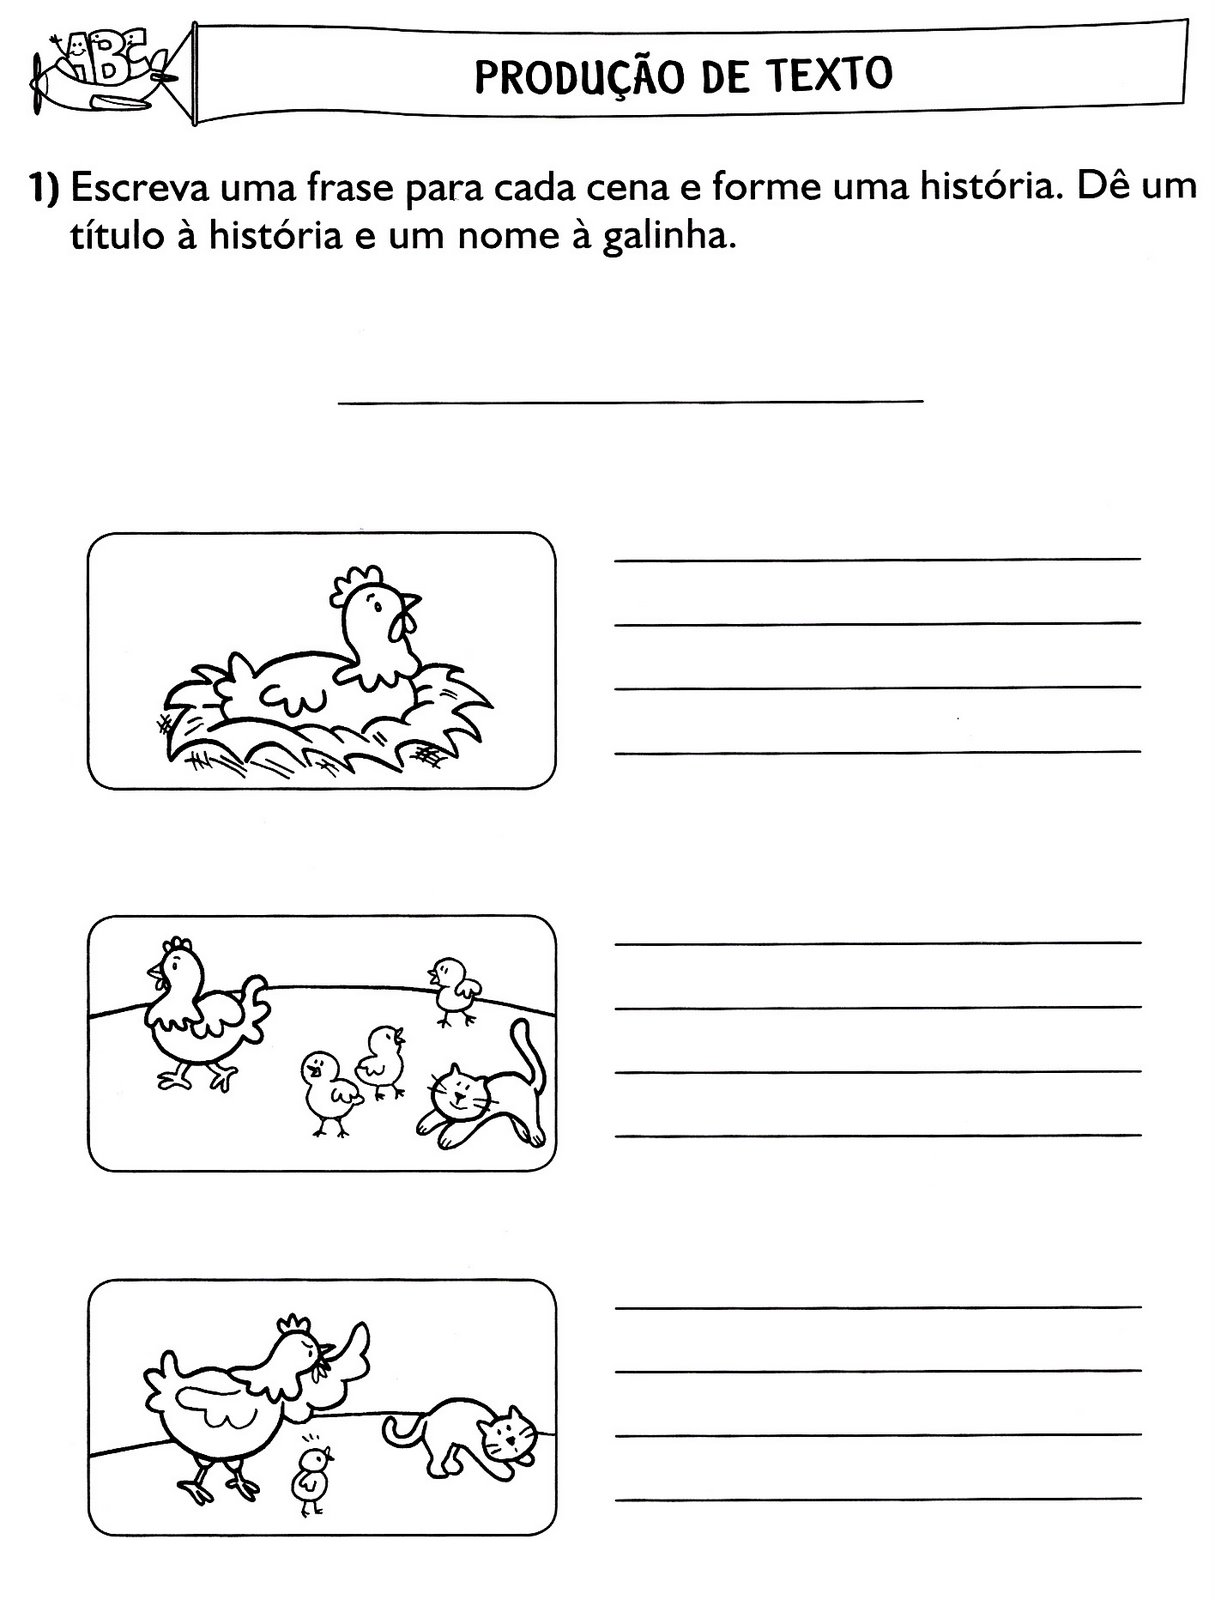 www.ensinar-aprender.blogspot.comprodução textual ilustrada - a galinha